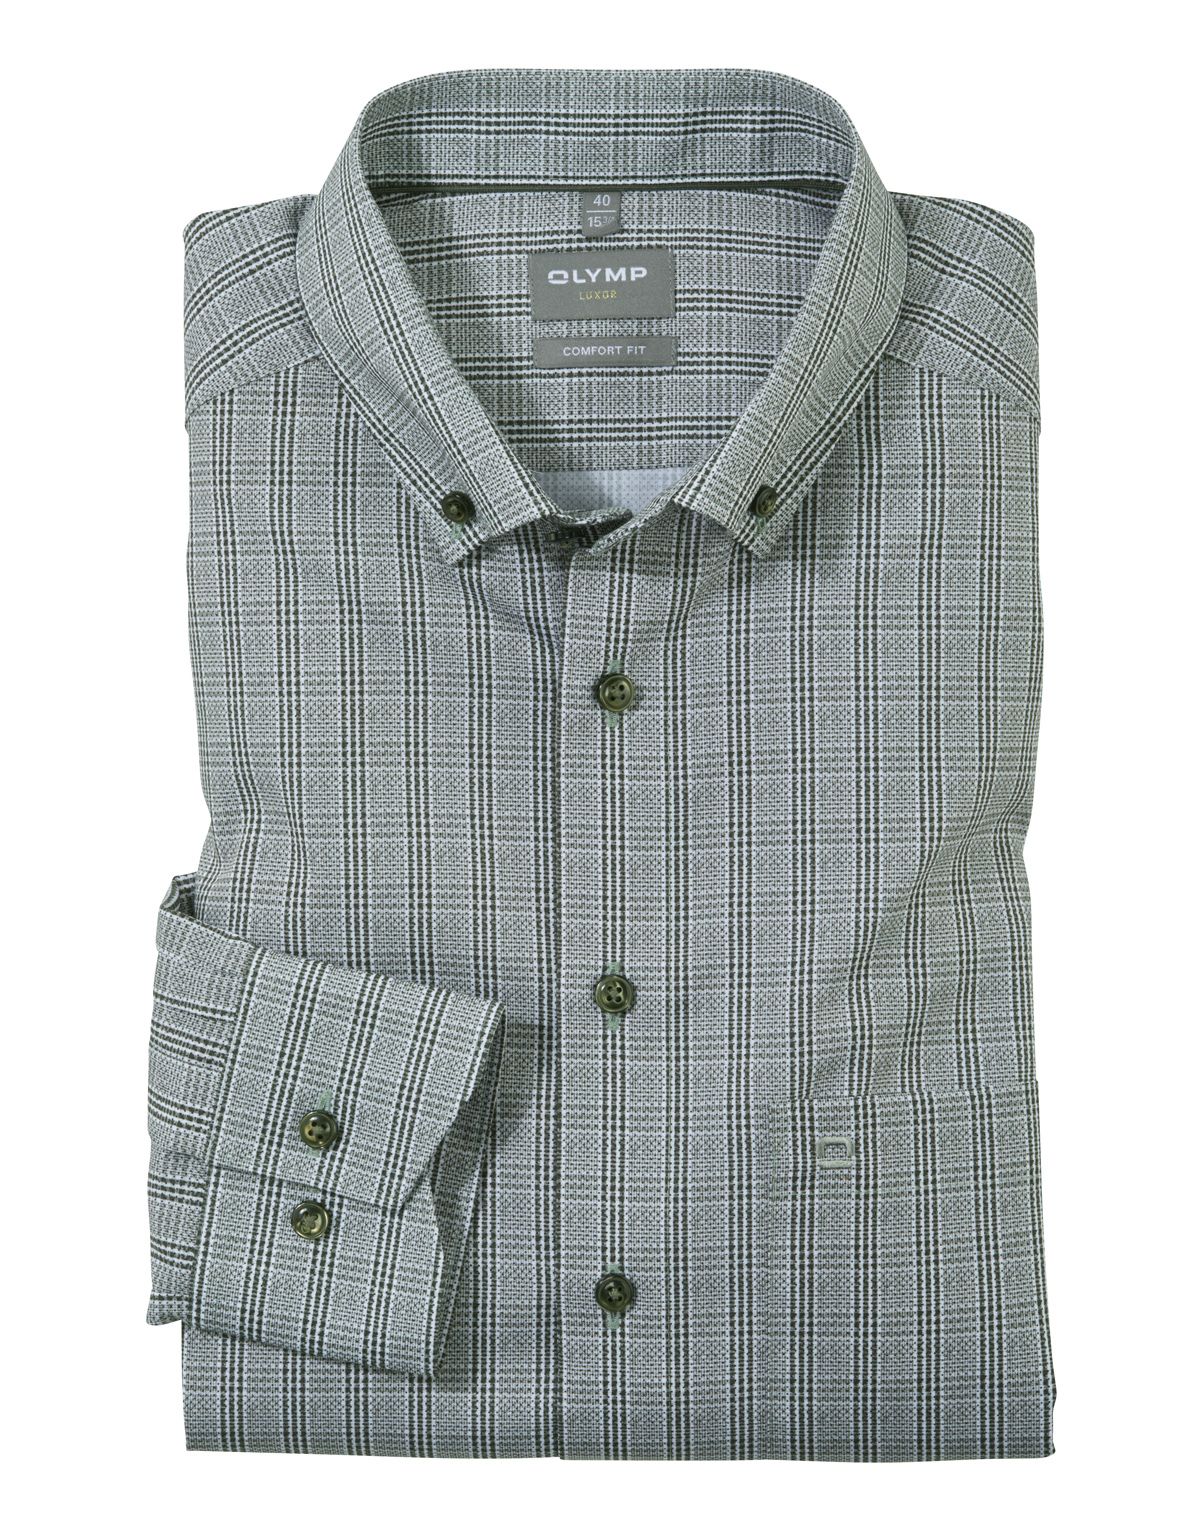 Рубашка мужская в клетку OLYMP Luxor, прямой крой, пуговицы на воротнике[Зеленый]